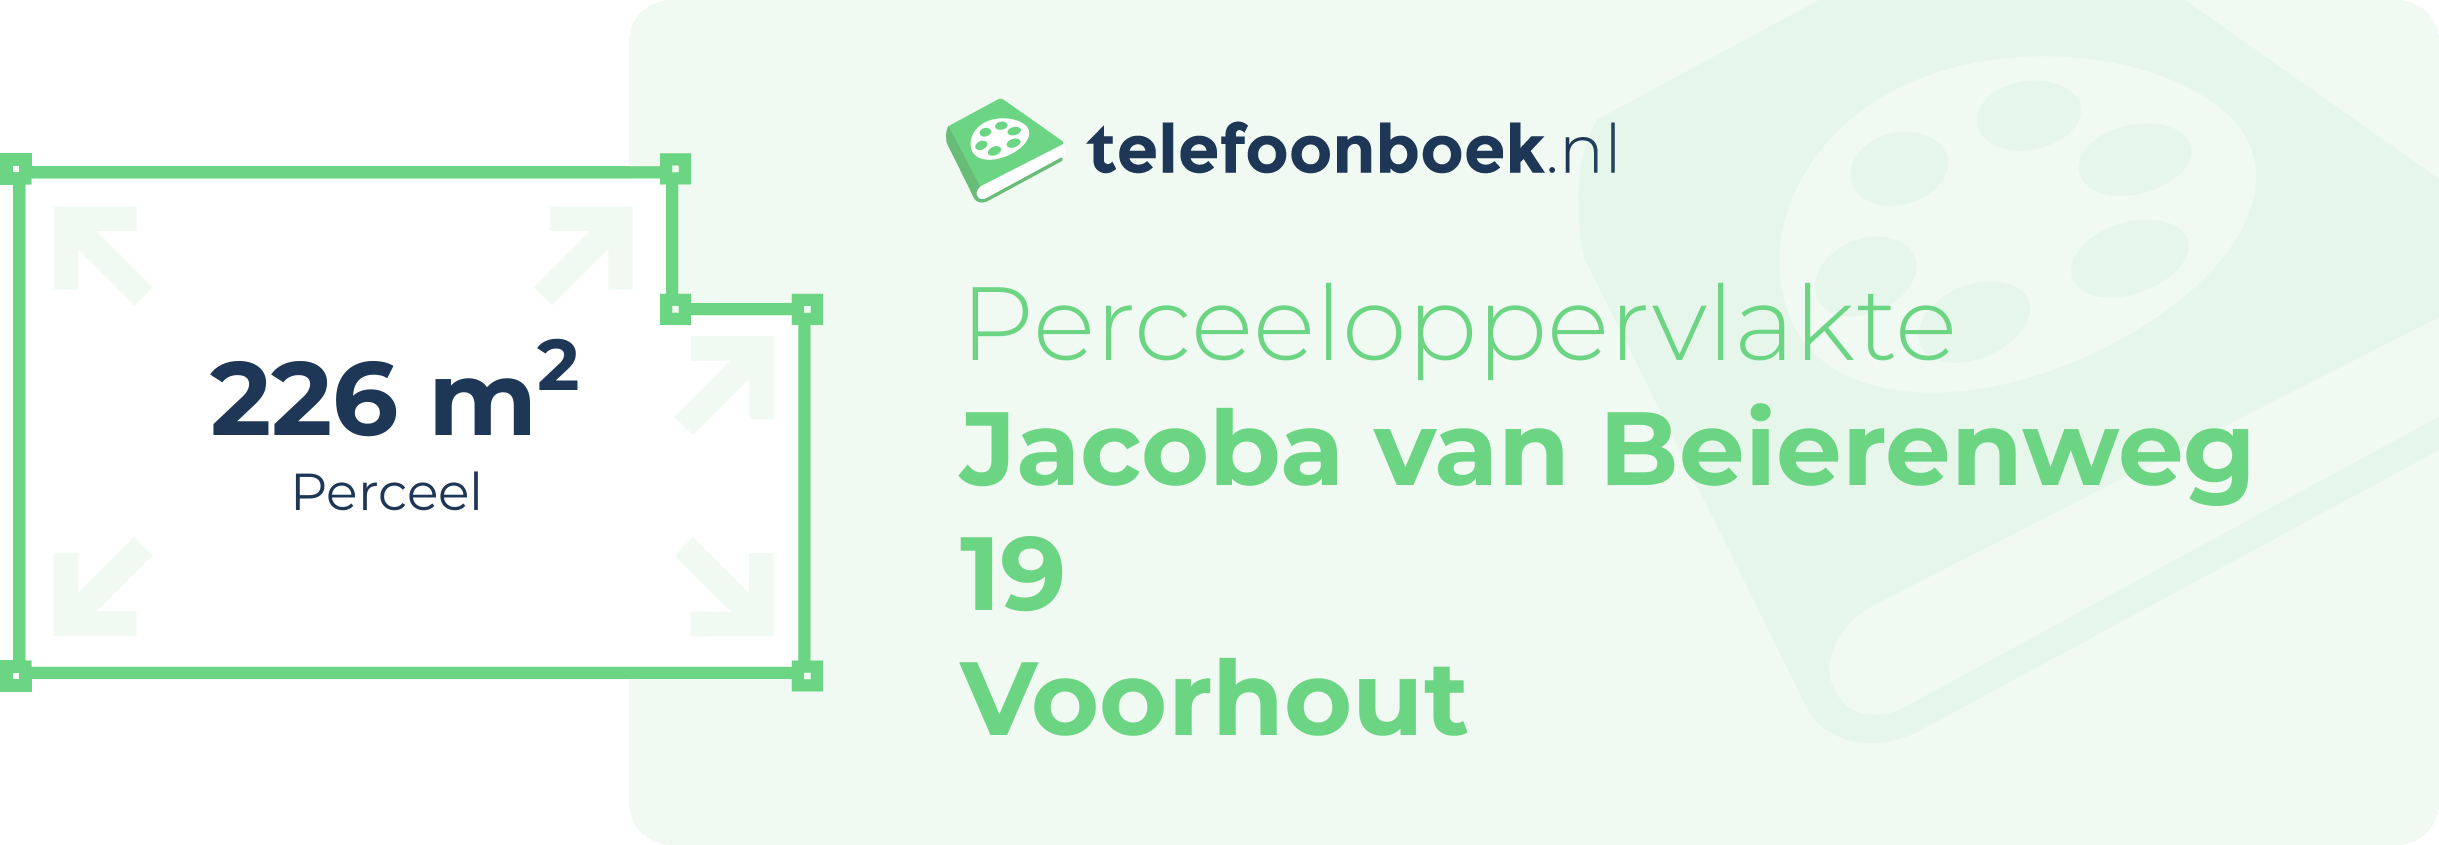 Perceeloppervlakte Jacoba Van Beierenweg 19 Voorhout